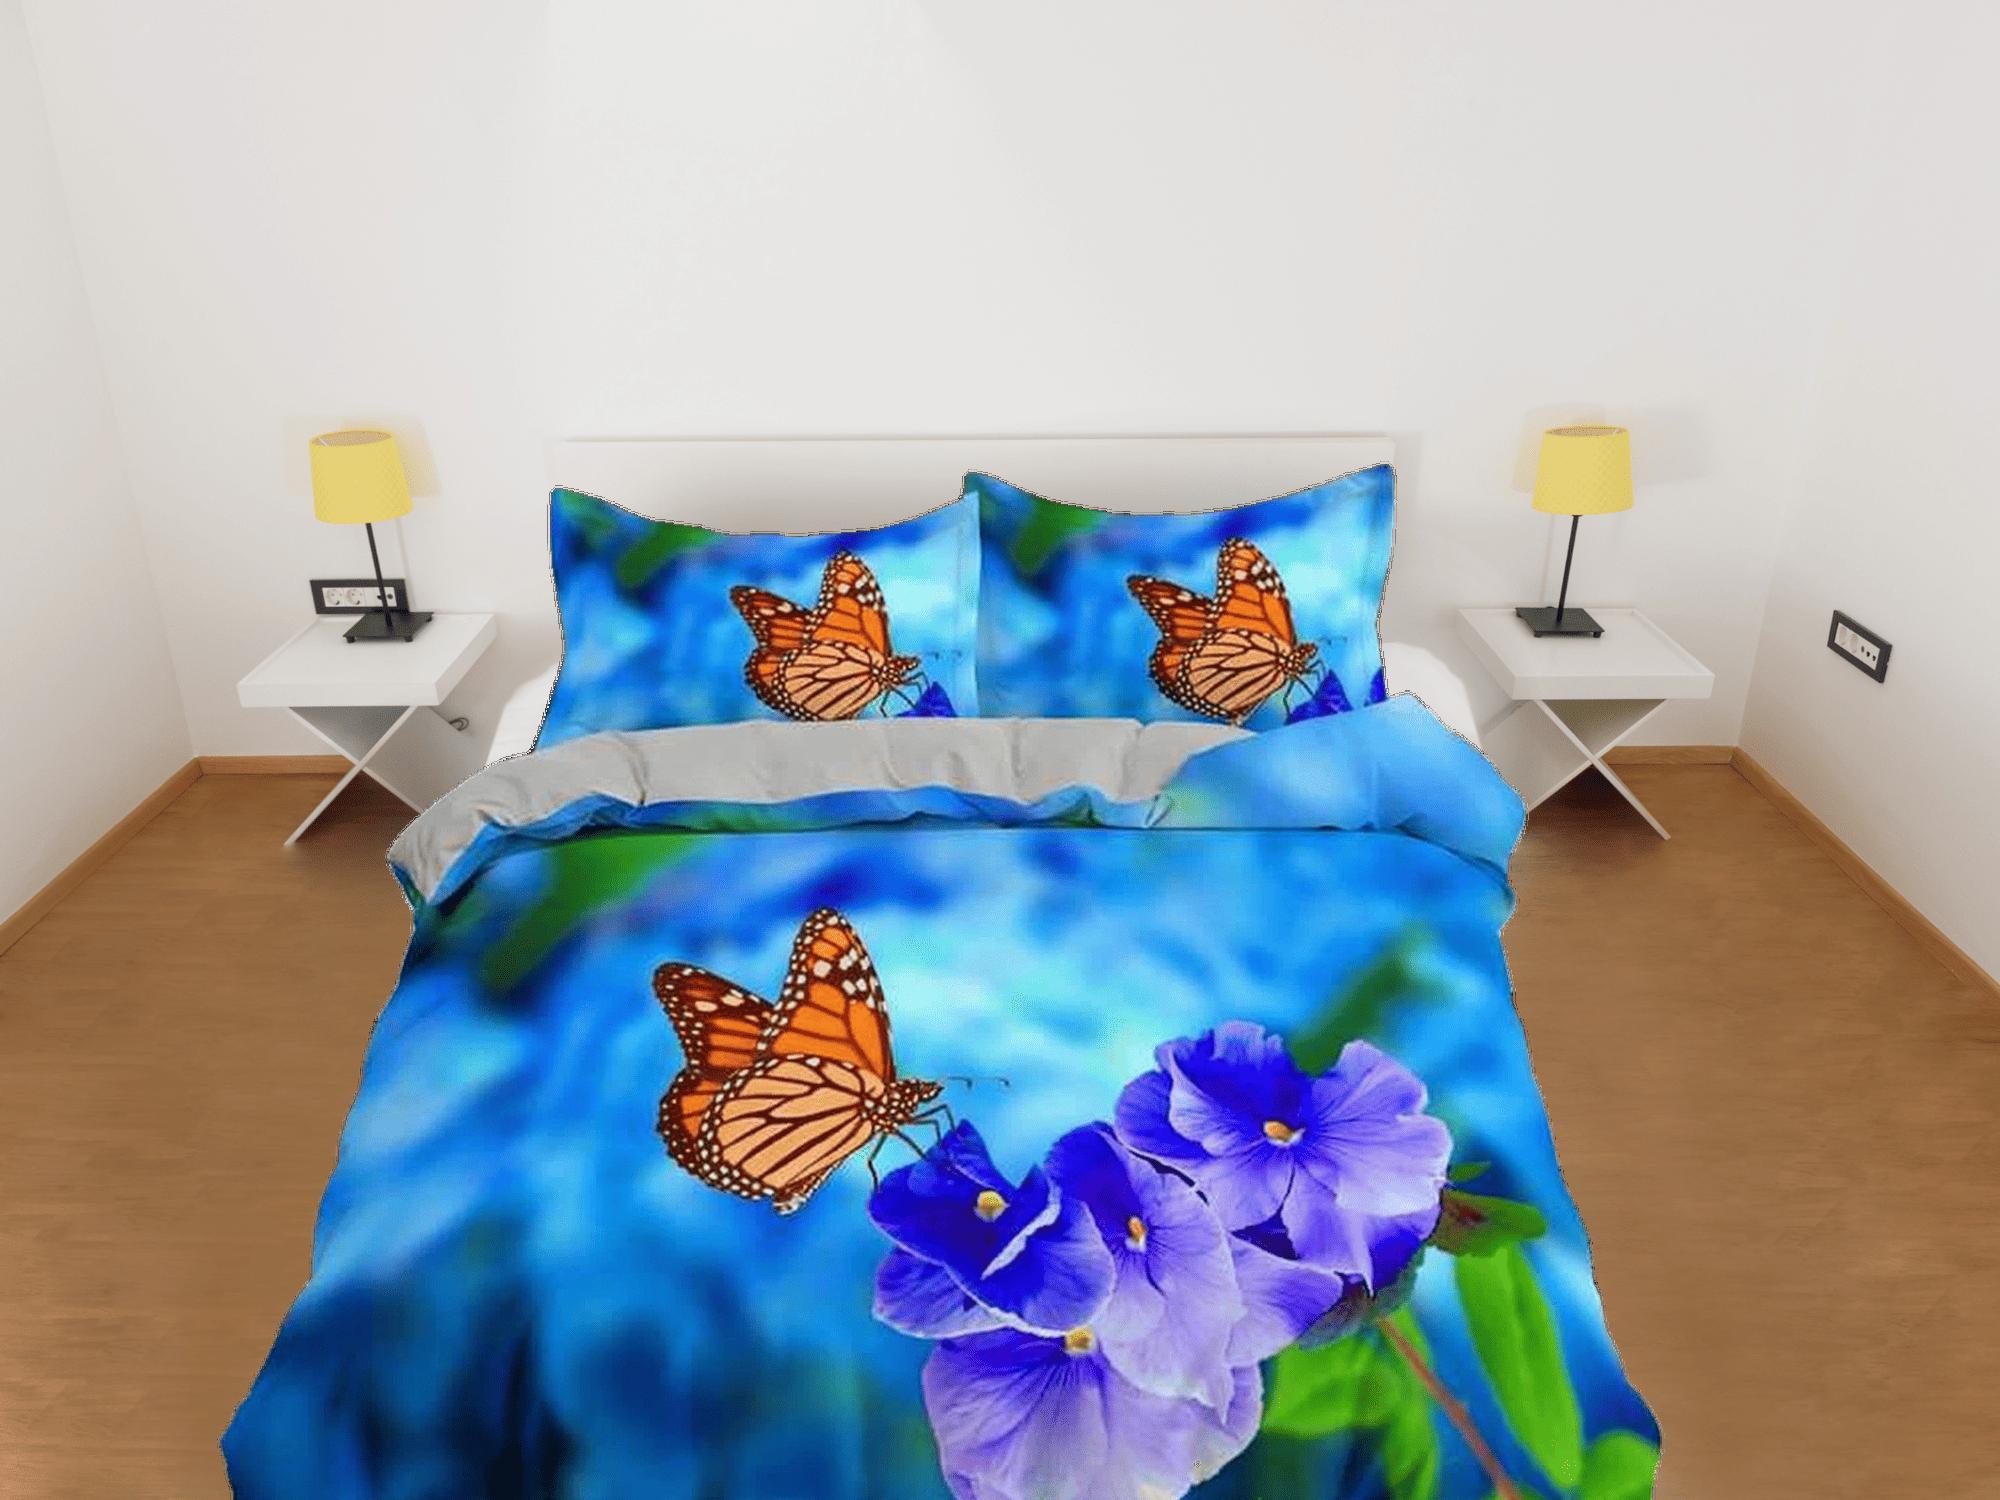 daintyduvet Monarch butterfly lavender flower bedding duvet cover boho chic dorm bedding full size adult duvet king queen twin, nursery toddler bedding